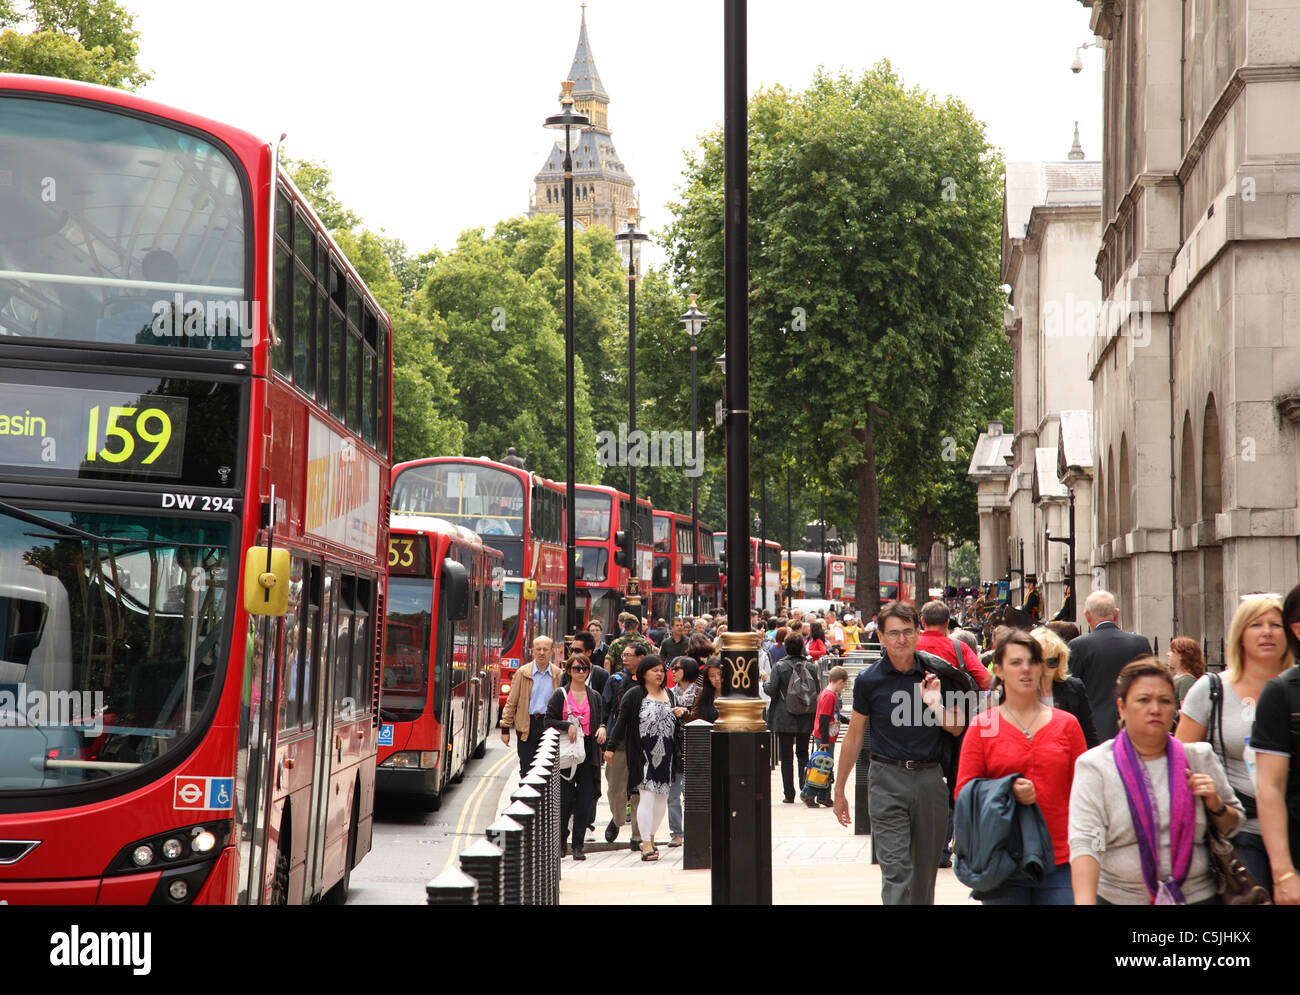 Les bus et les gens sur Whitehall, Westminster, Londres, Angleterre, Royaume-Uni Banque D'Images